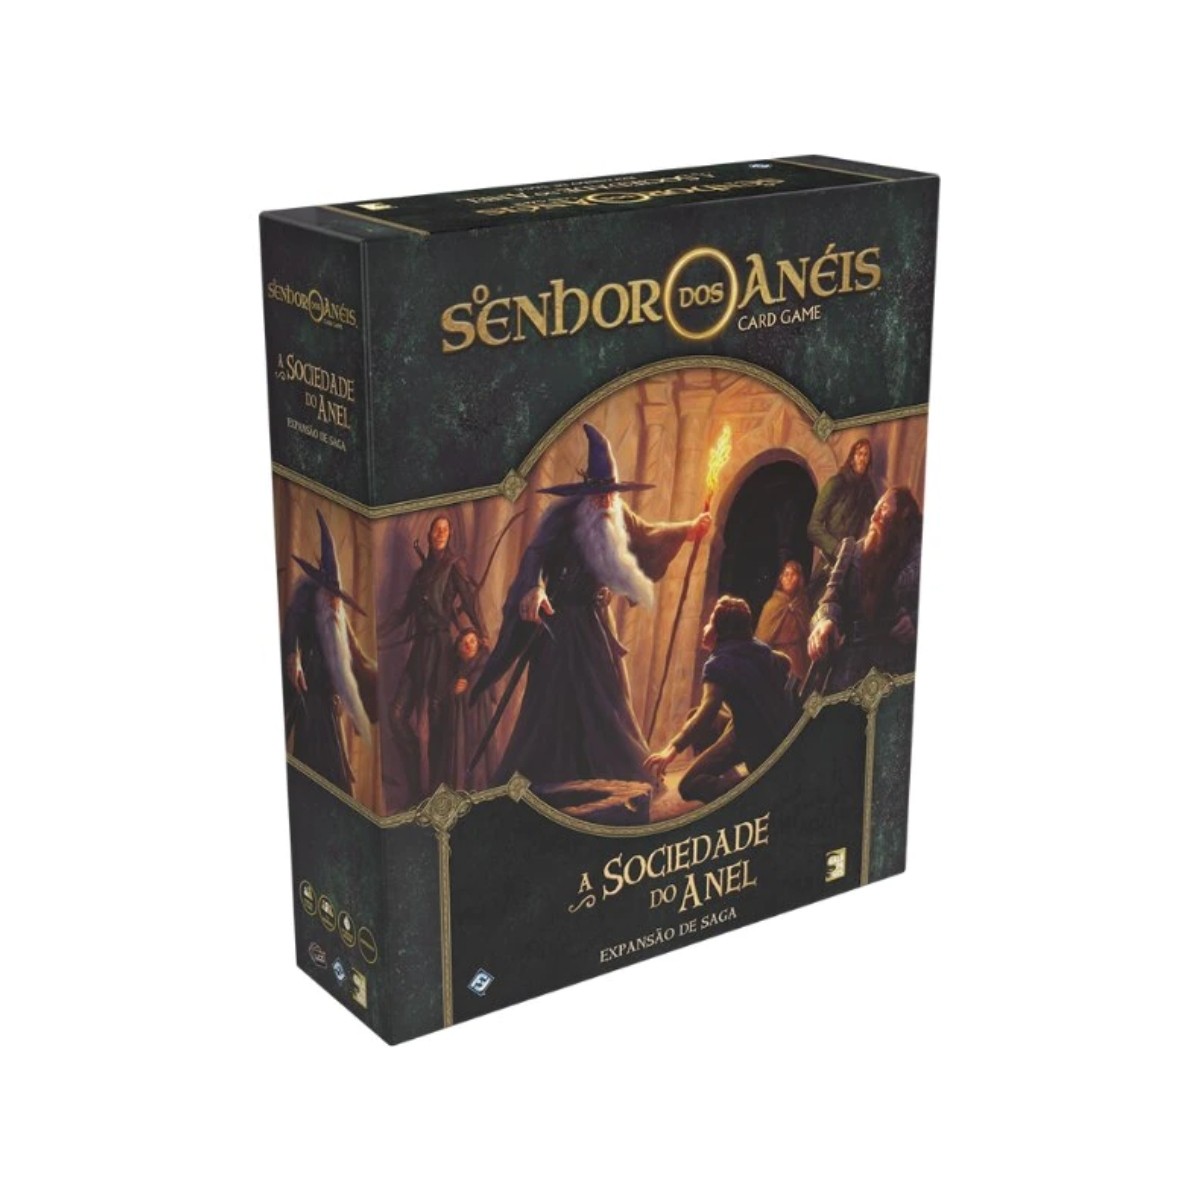 O Senhor dos Anéis: Card Game - A Sociedade do Anel (Expansão de Saga) - Galápagos